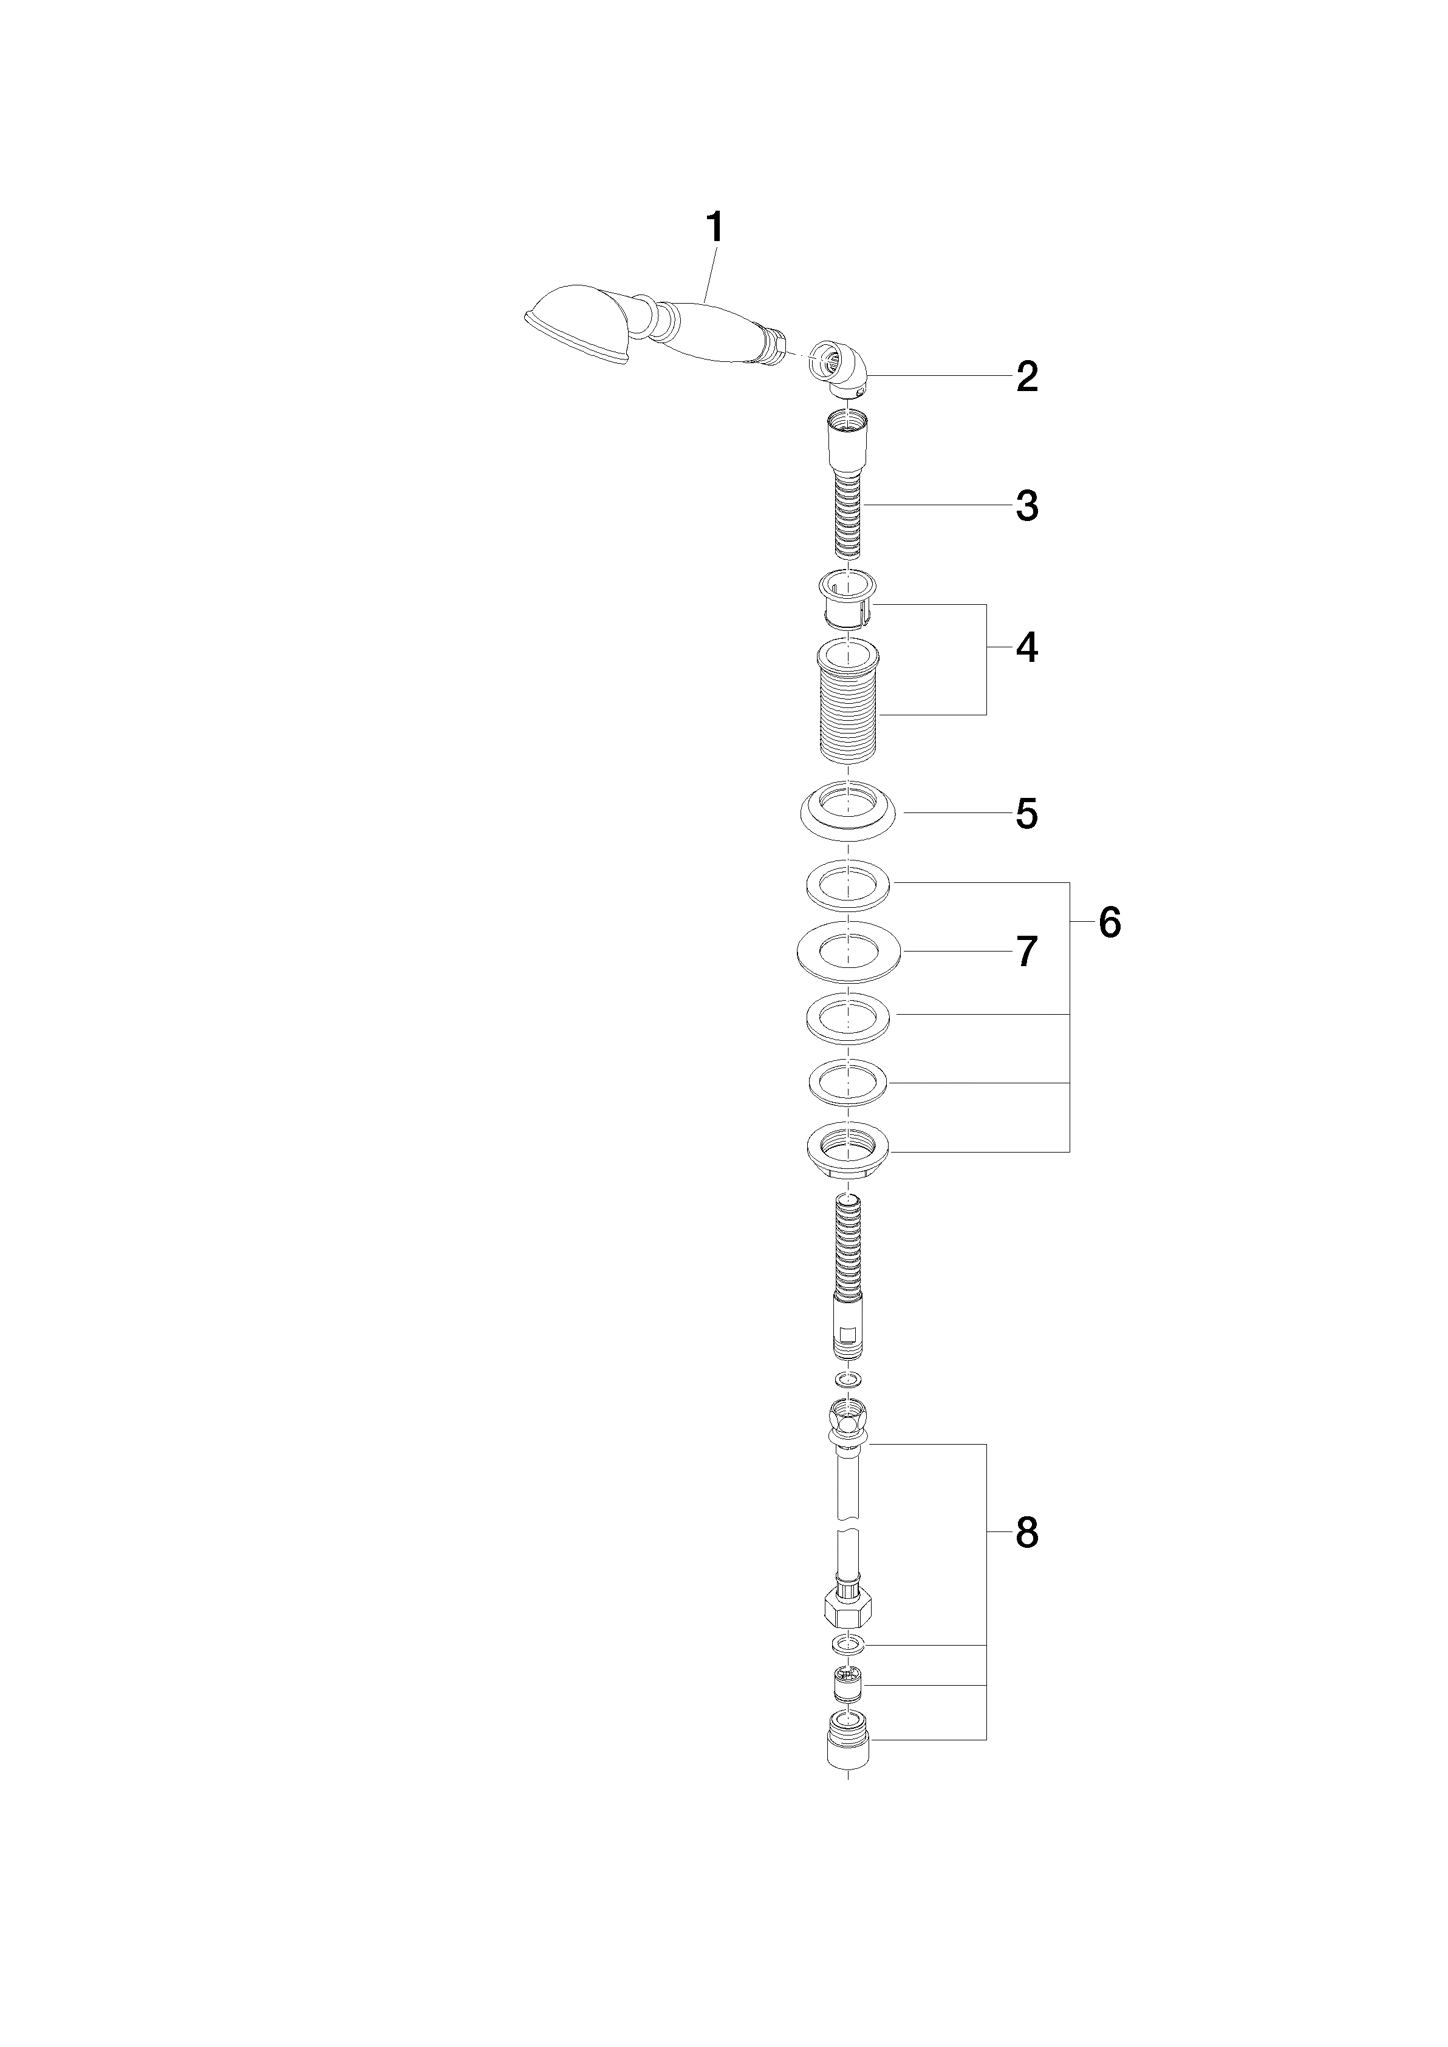 DORNBRACHT MADISON El duşu seti Küvet kenarı veya seramik kenarı montajı için - Pirinç (23kt altın) #27703360-09 resmi